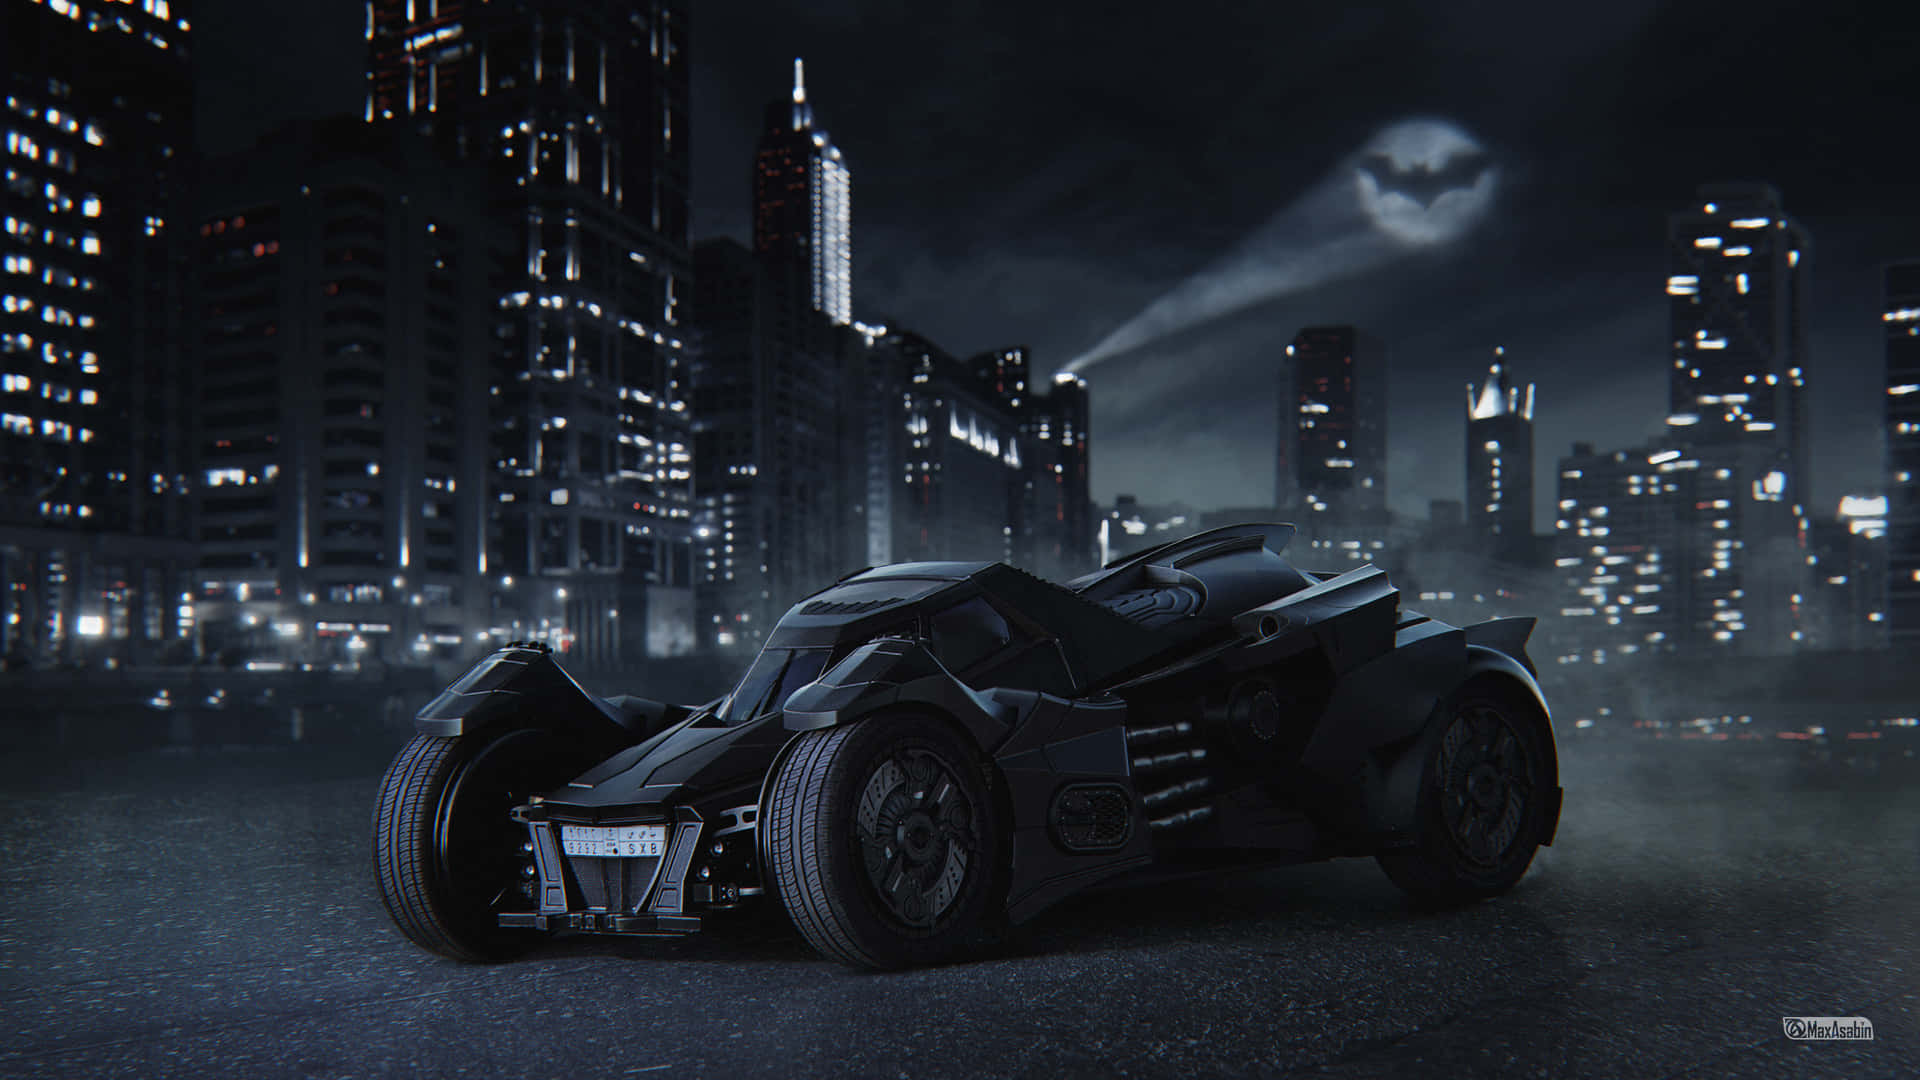 The Legendary Batmobile Ready for Action on any Desktop Wallpaper